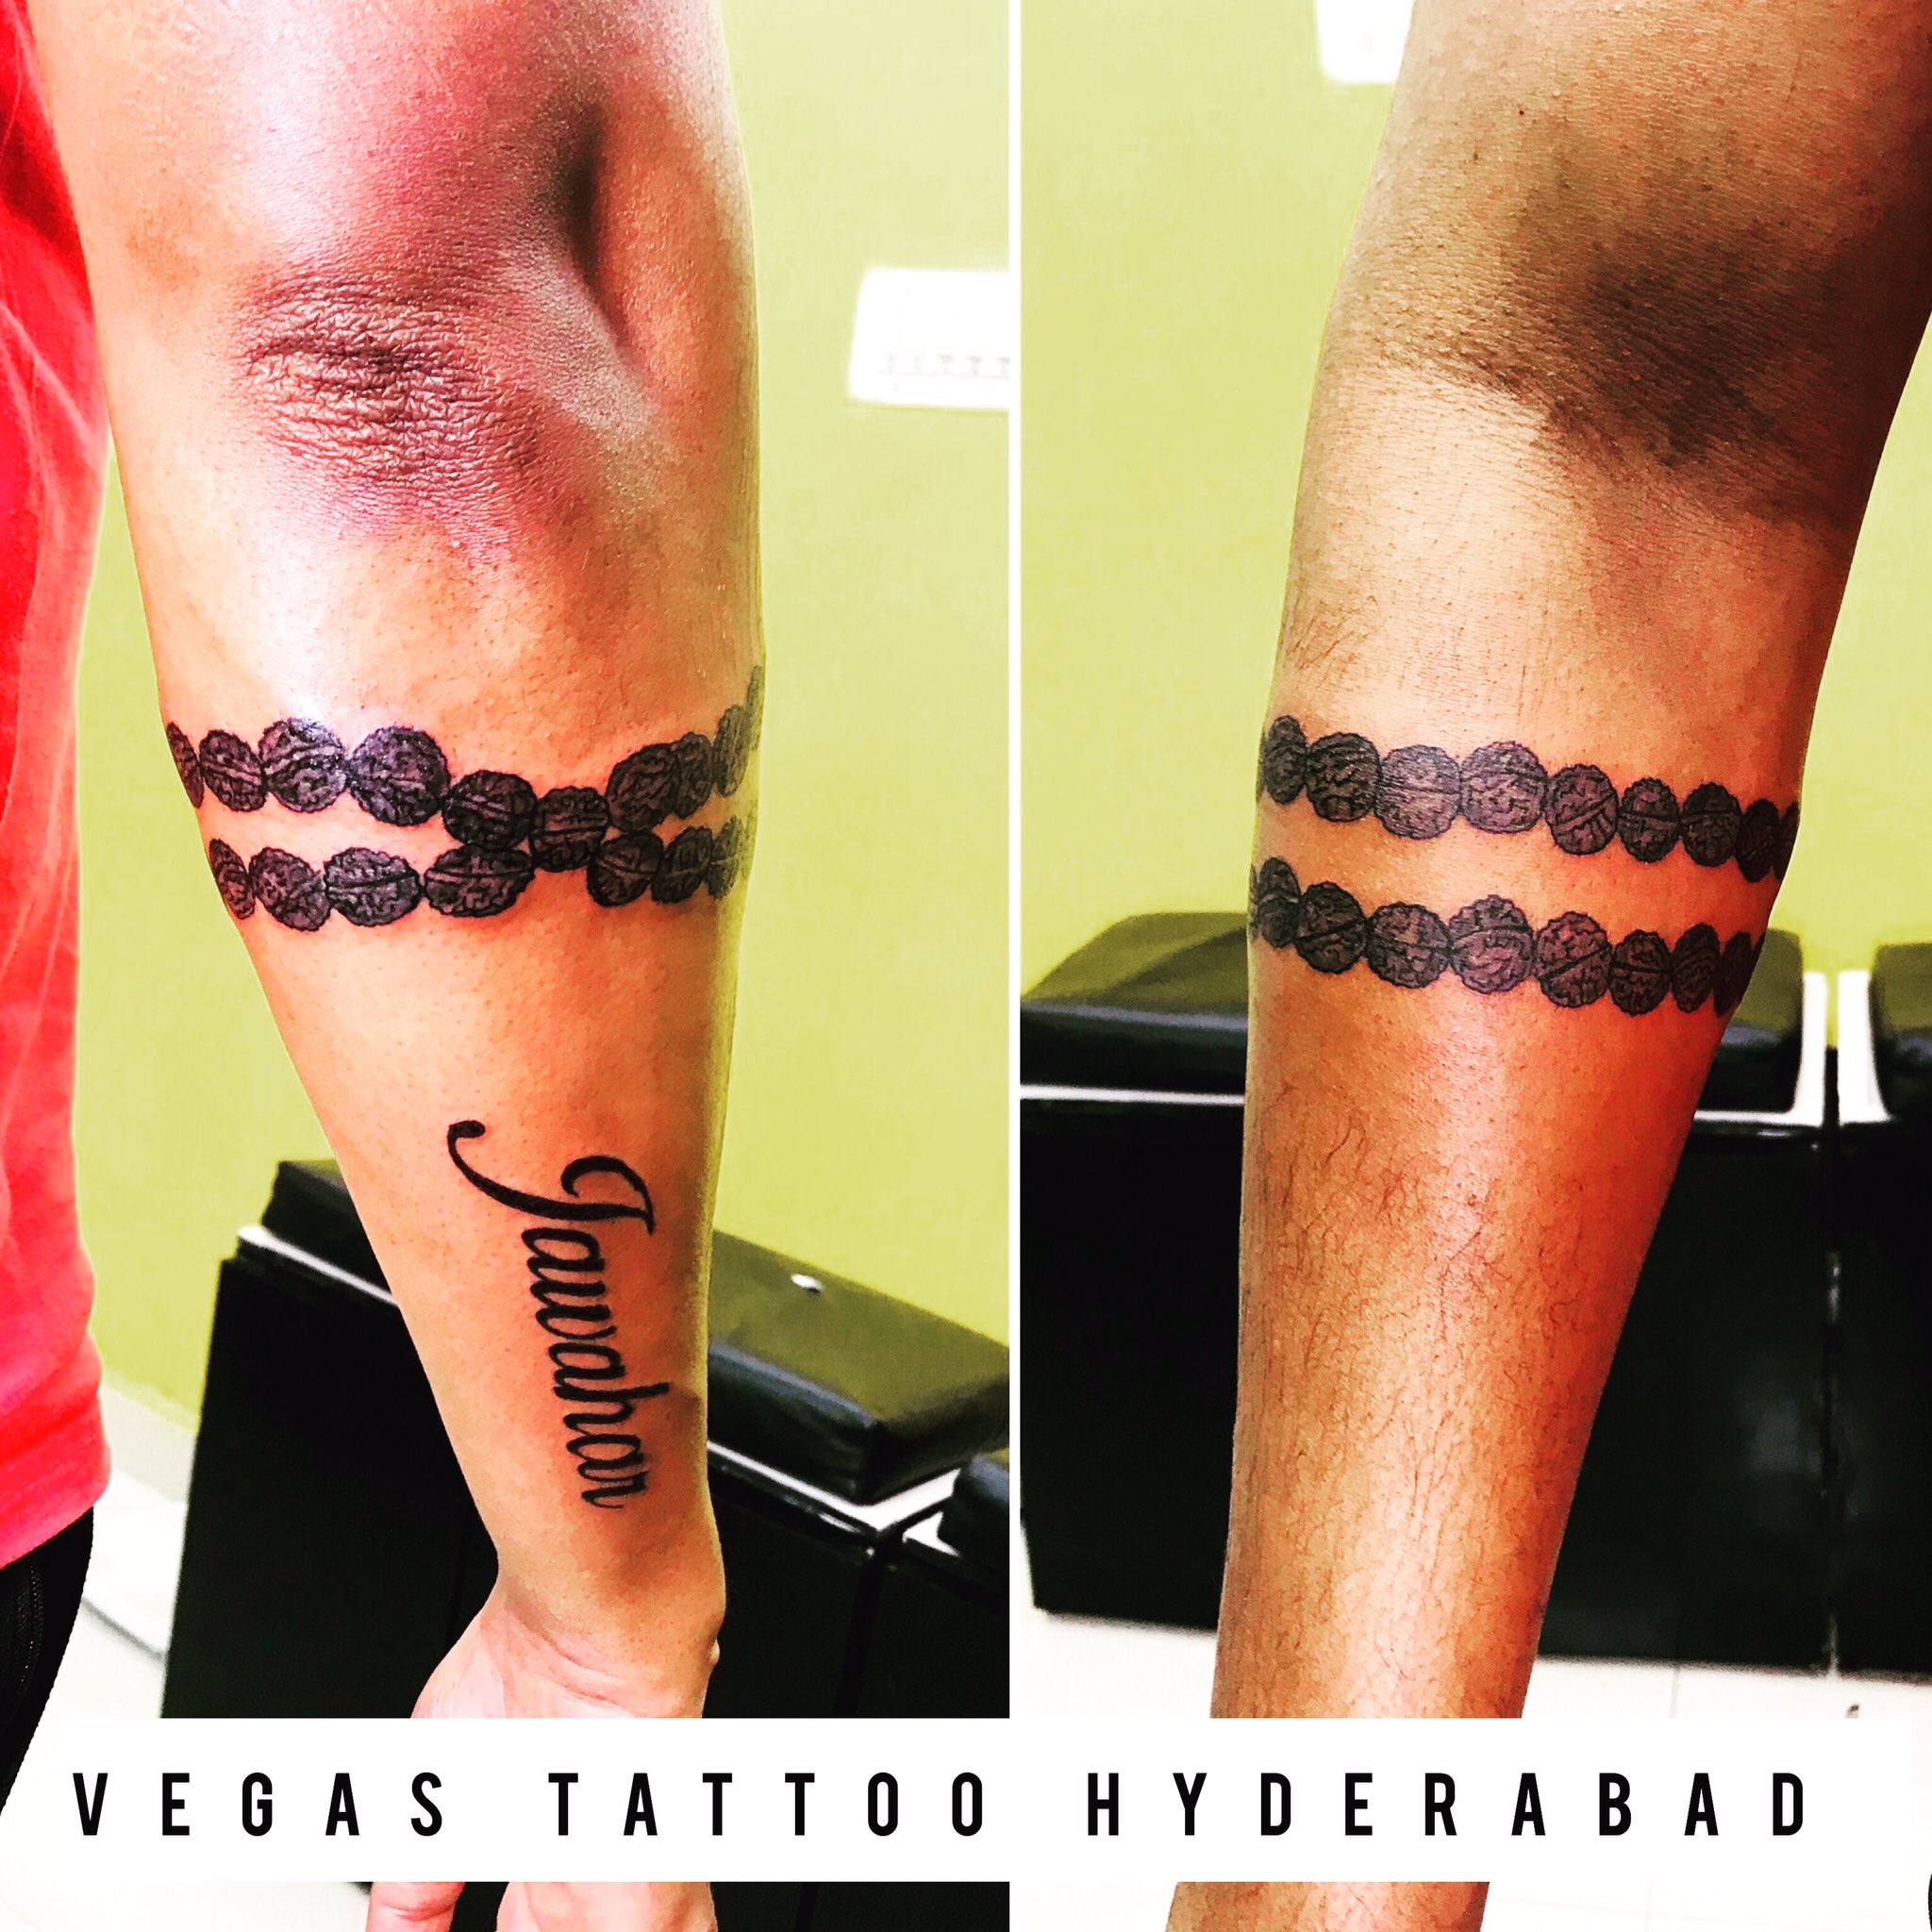 Trishul tattoo same tatto  Dev Tattoos  Tattoo Artist in New Delhi India